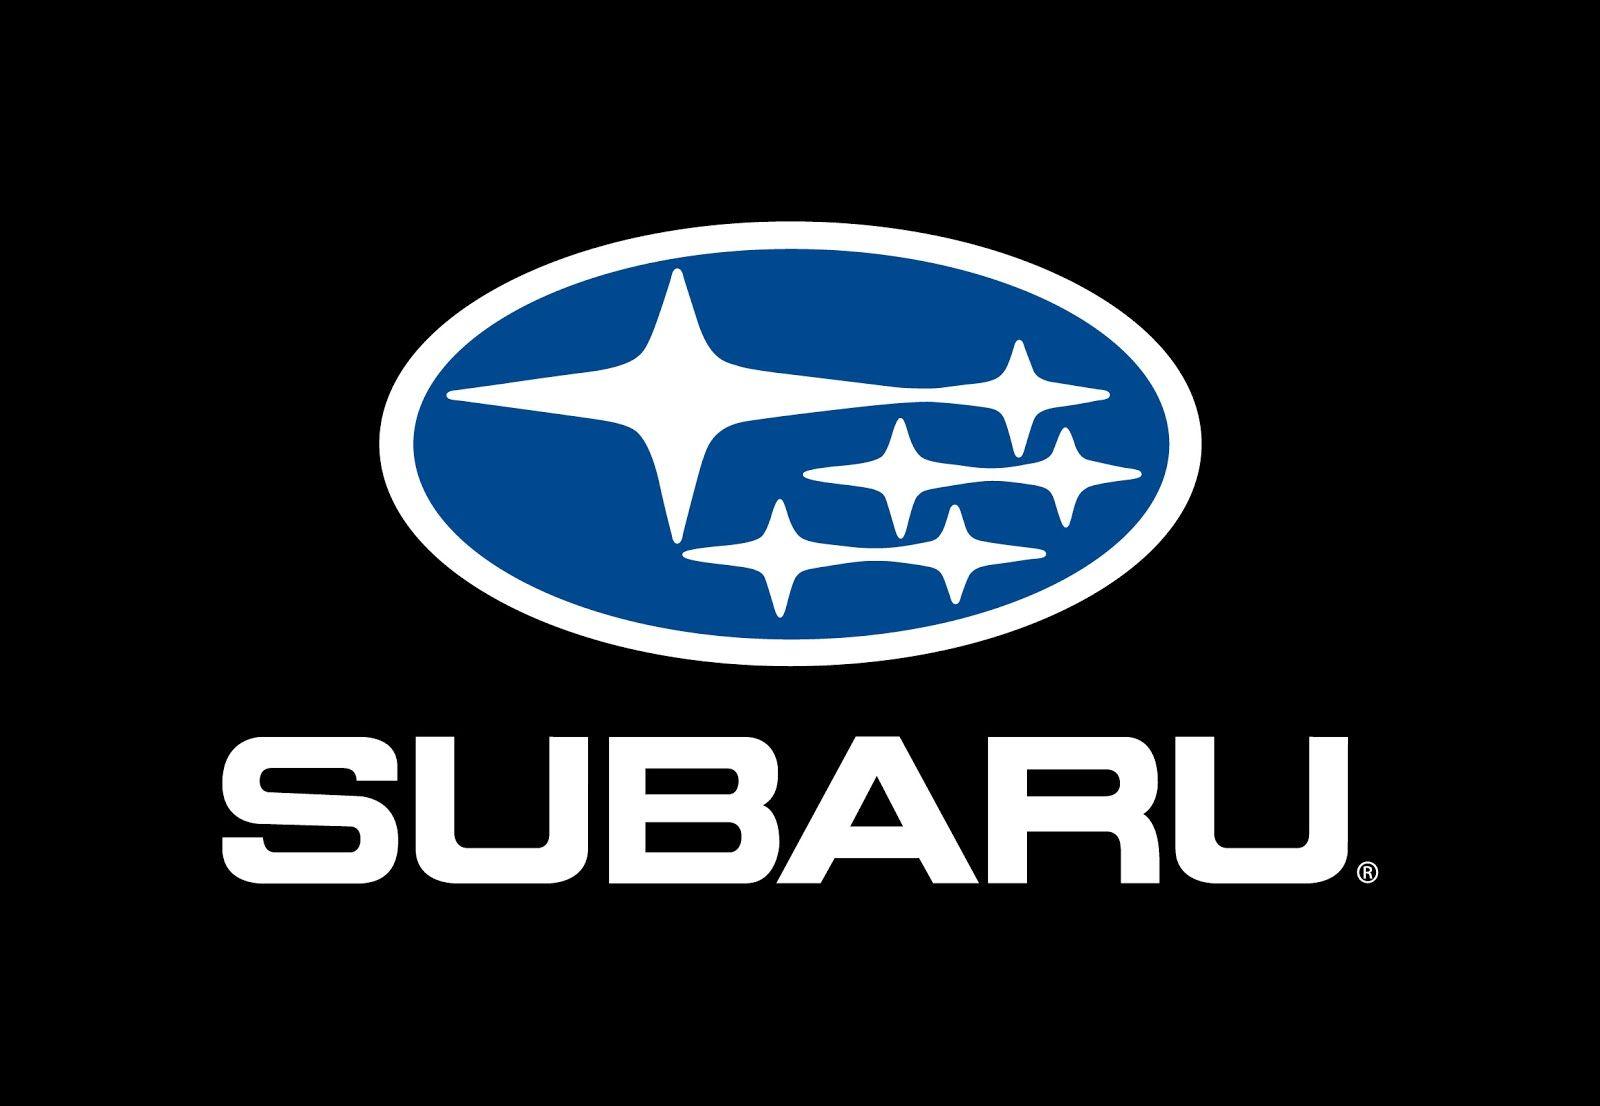 Black and Blue Logo - Subaru Logo, Subaru Car Symbol Meaning and History | Car Brand Names.com